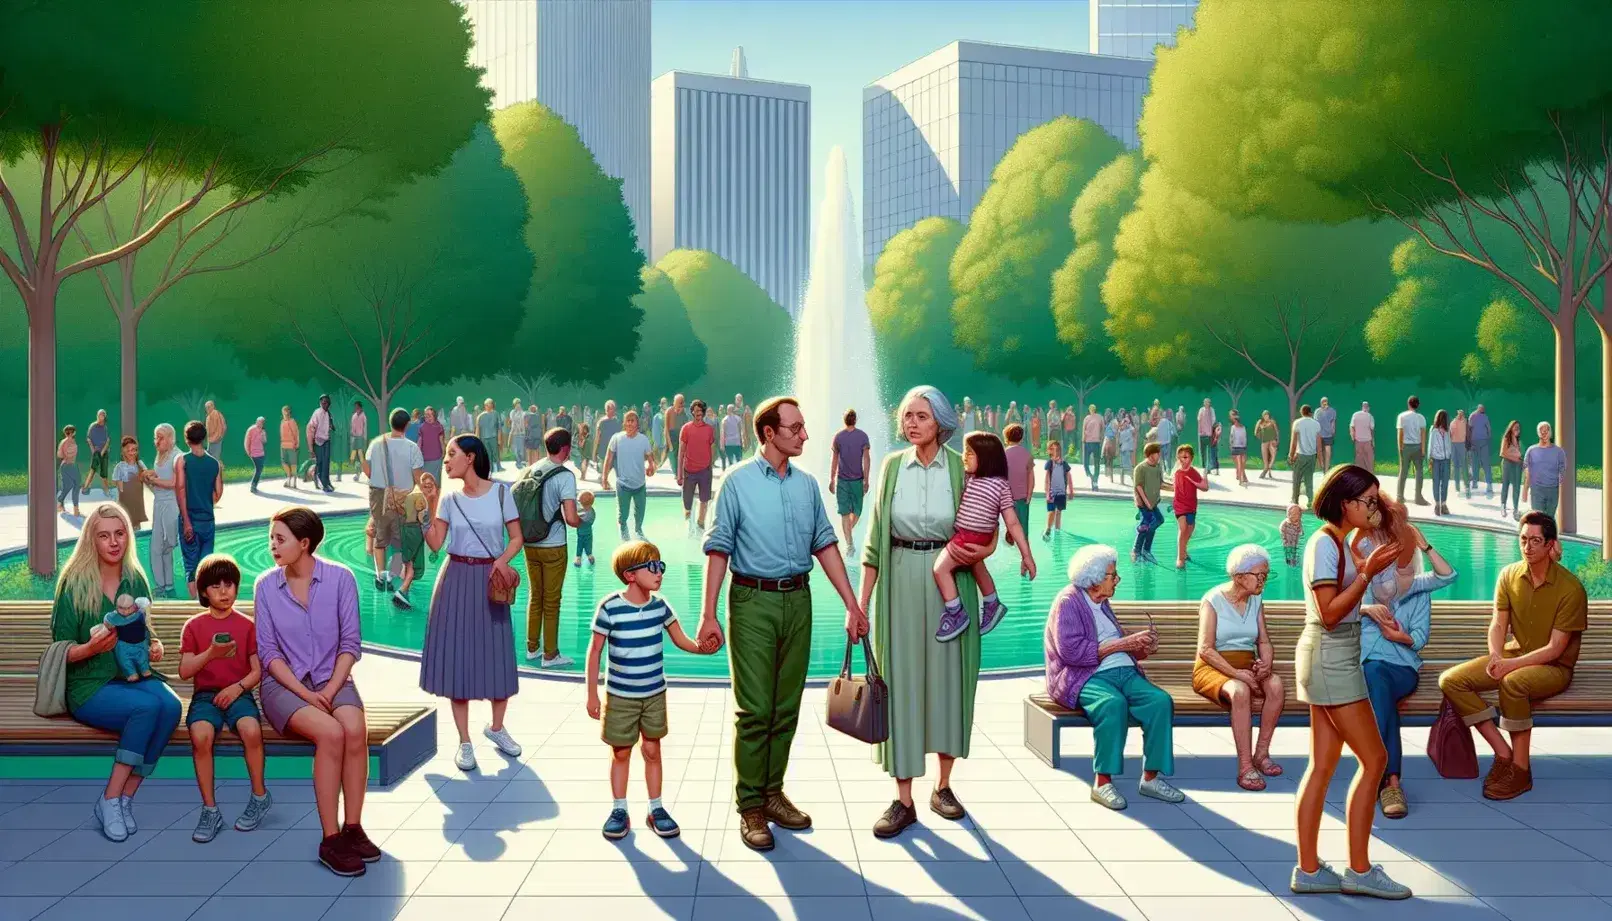 Grupo diverso de personas disfrutando de un día soleado en un parque urbano con árboles verdes, una fuente de agua y conversaciones animadas.